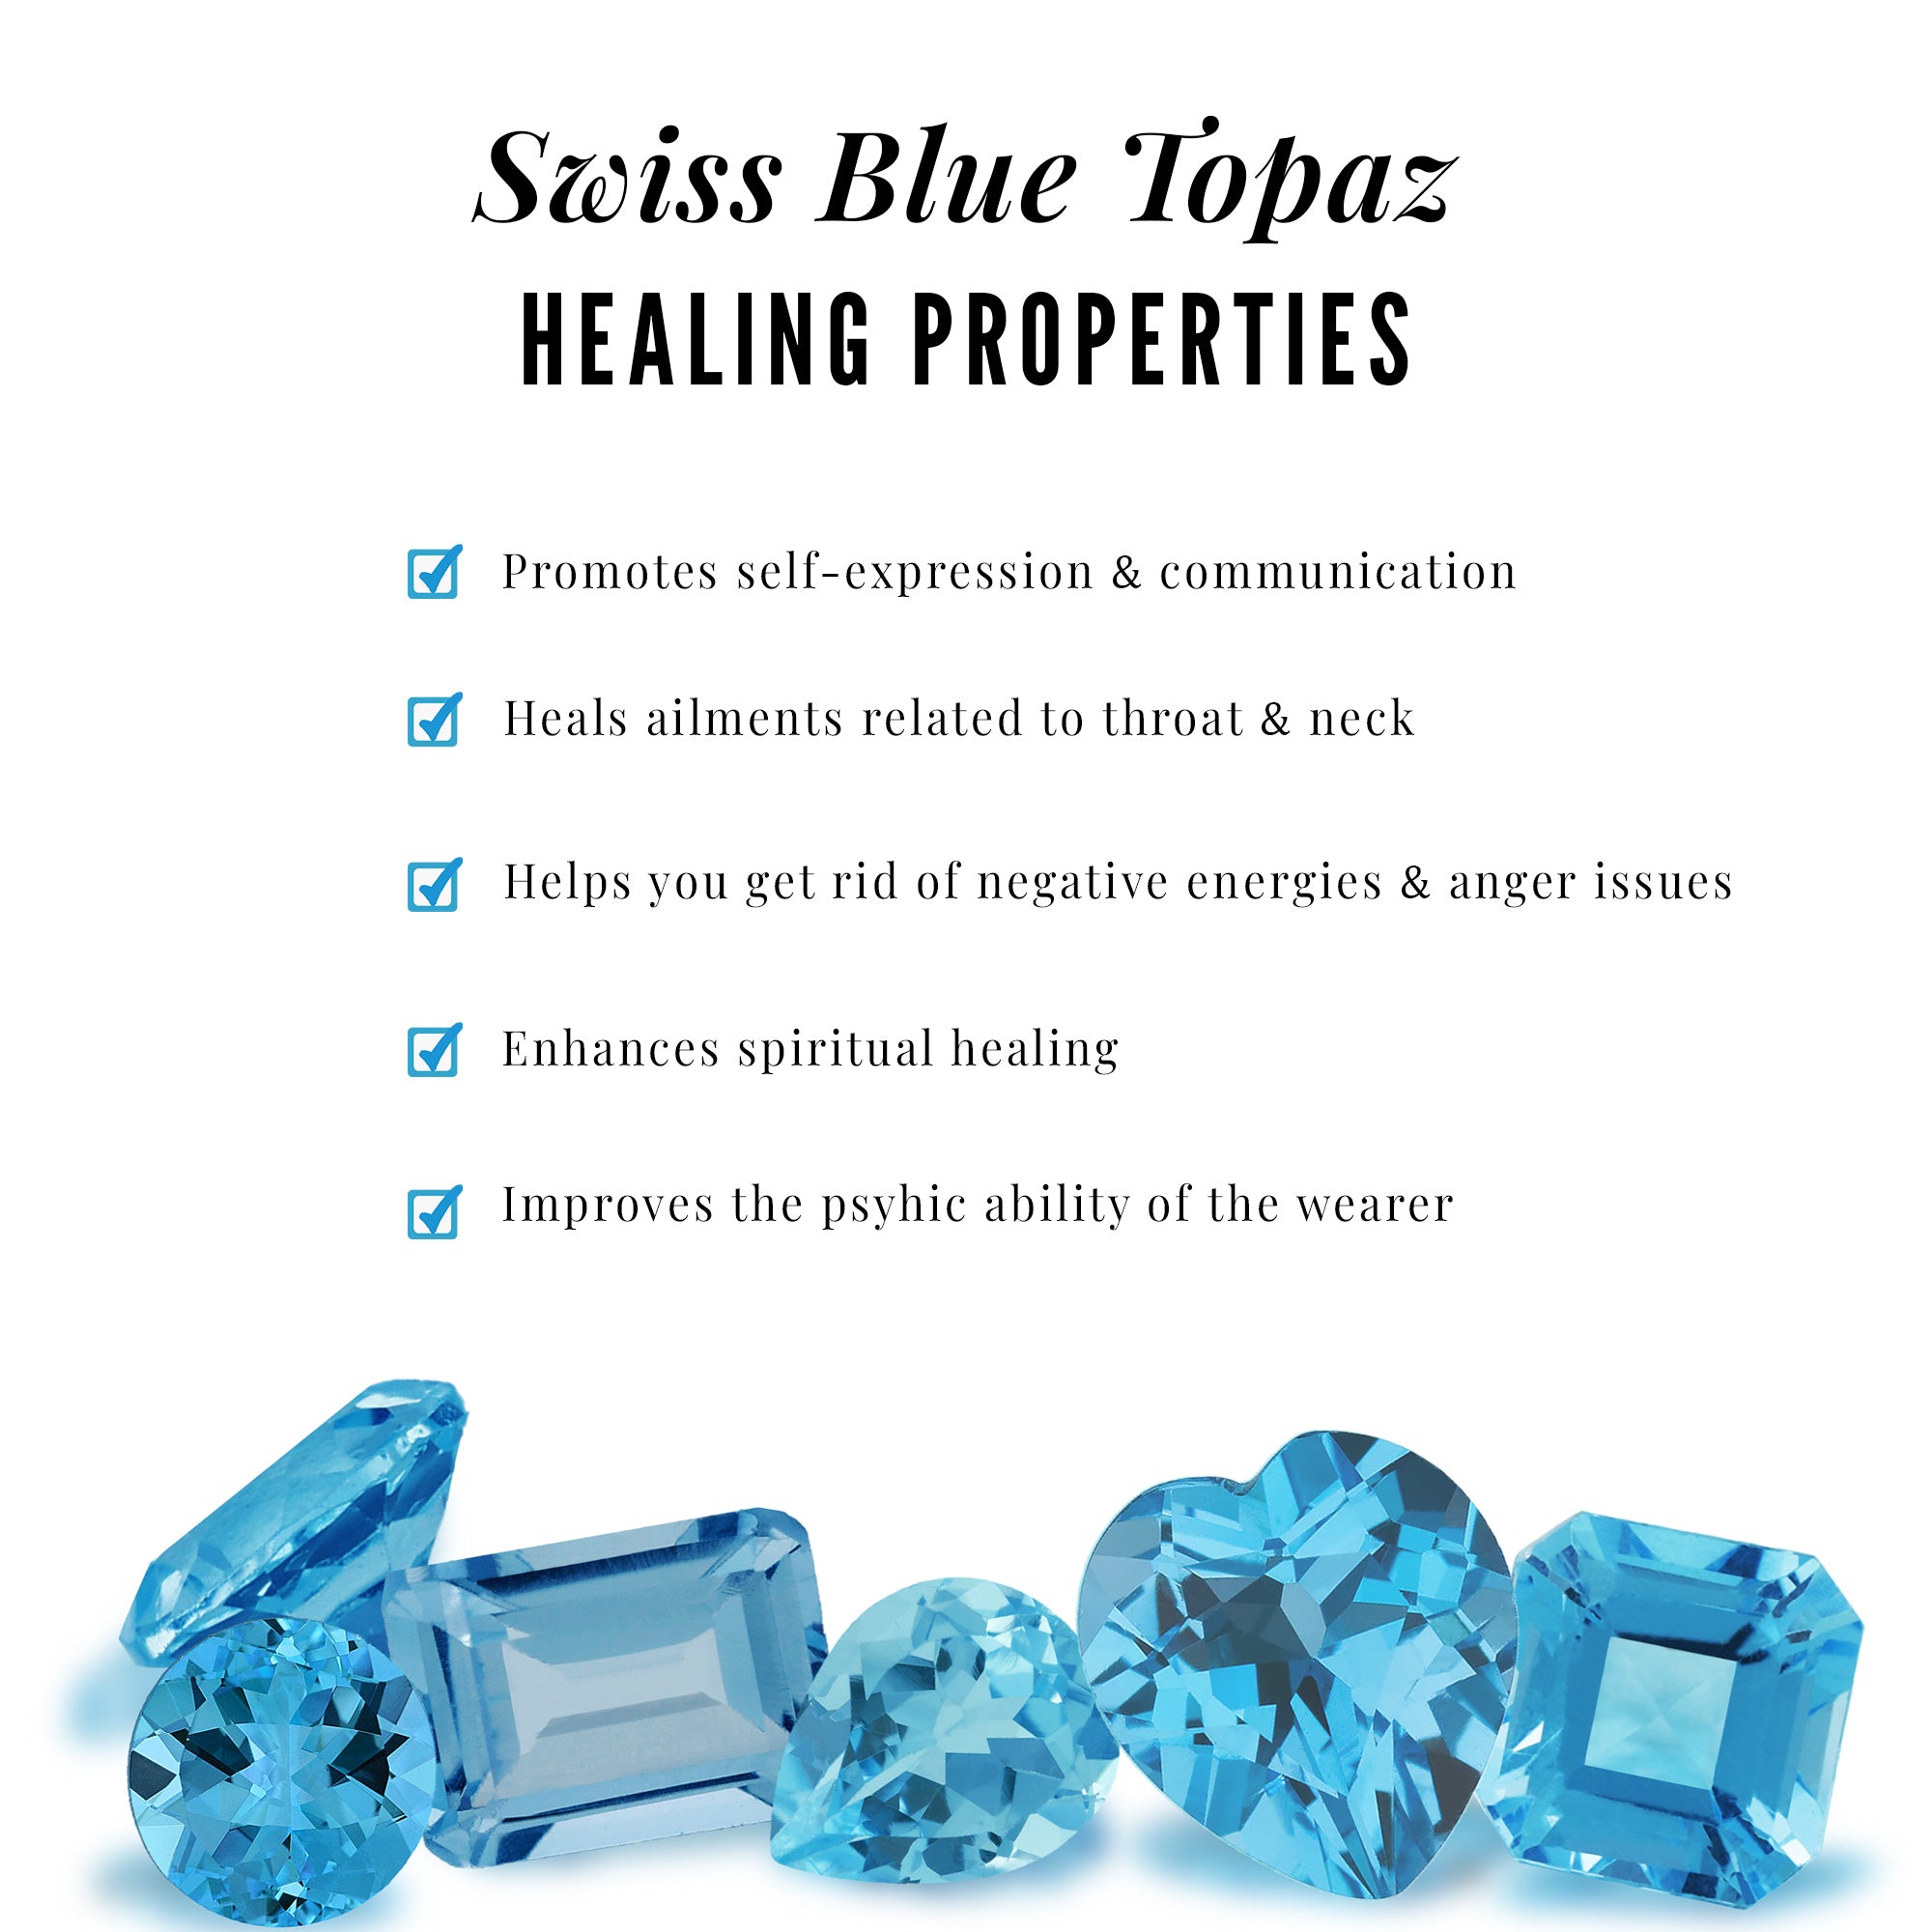 6X8 MM Octagon Cut Swiss Blue Topaz Solitaire Ring Swiss Blue Topaz - ( AAA ) - Quality - Rosec Jewels